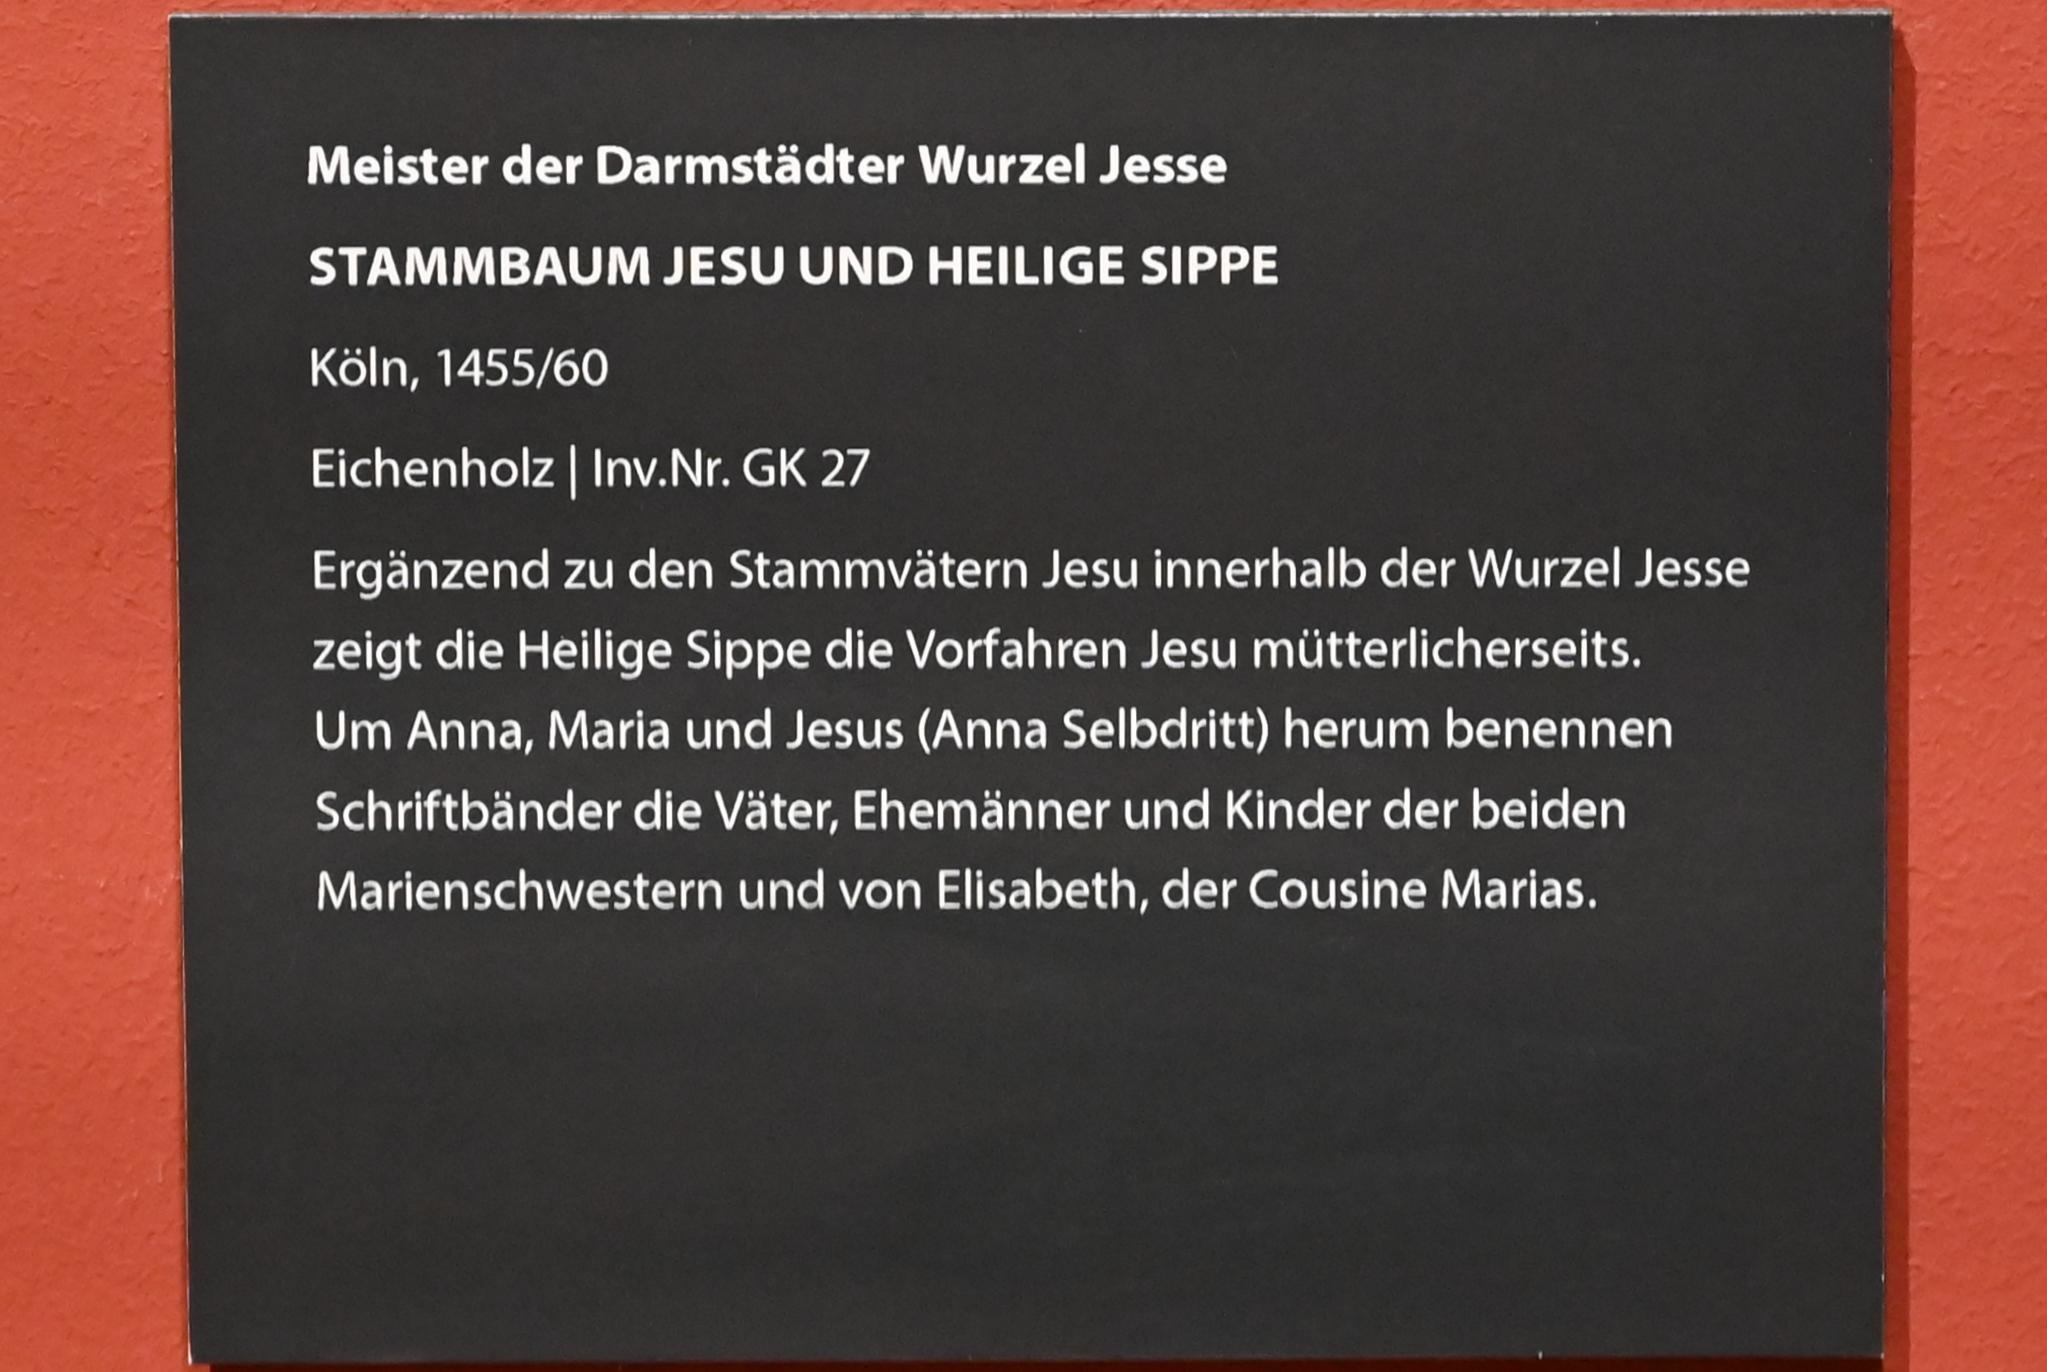 Meister der Darmstädter Wurzel Jesse (1457), Stammbaum Jesu und Heilige Sippe, Darmstadt, Hessisches Landesmuseum, Saal 14, 1455–1460, Bild 4/4